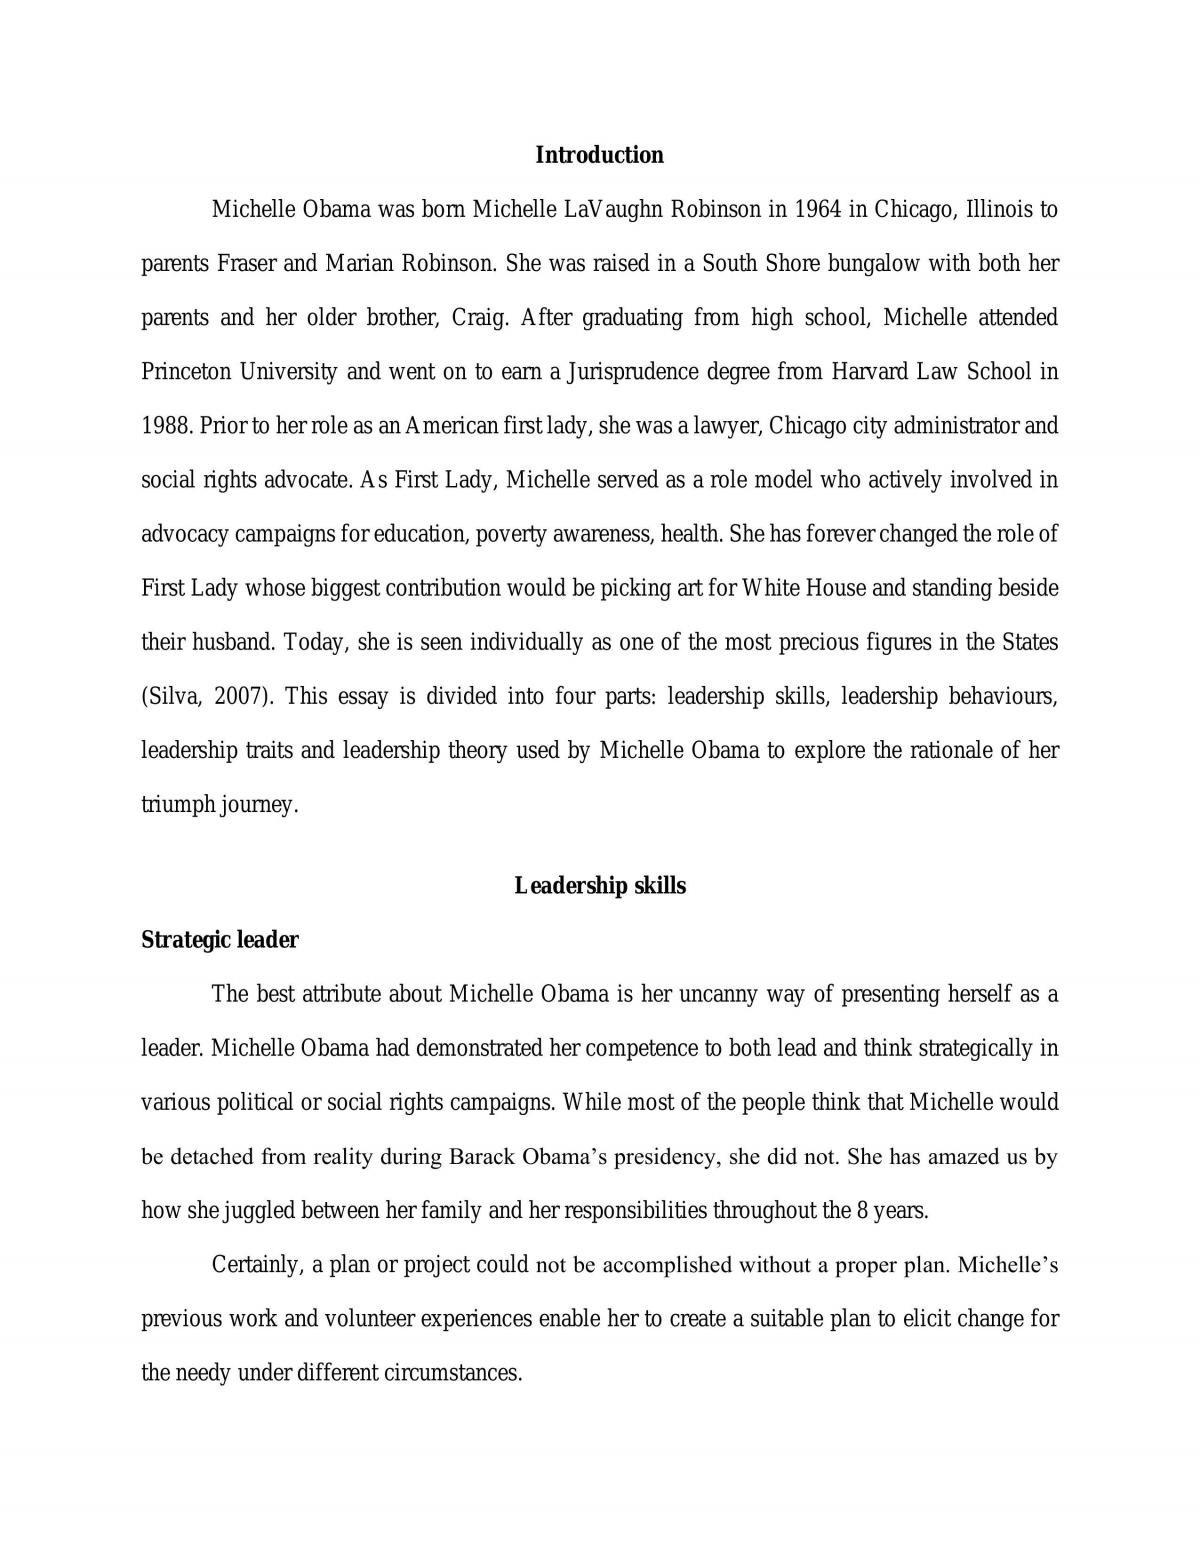 Critical essay - Michelle Obama - Page 1